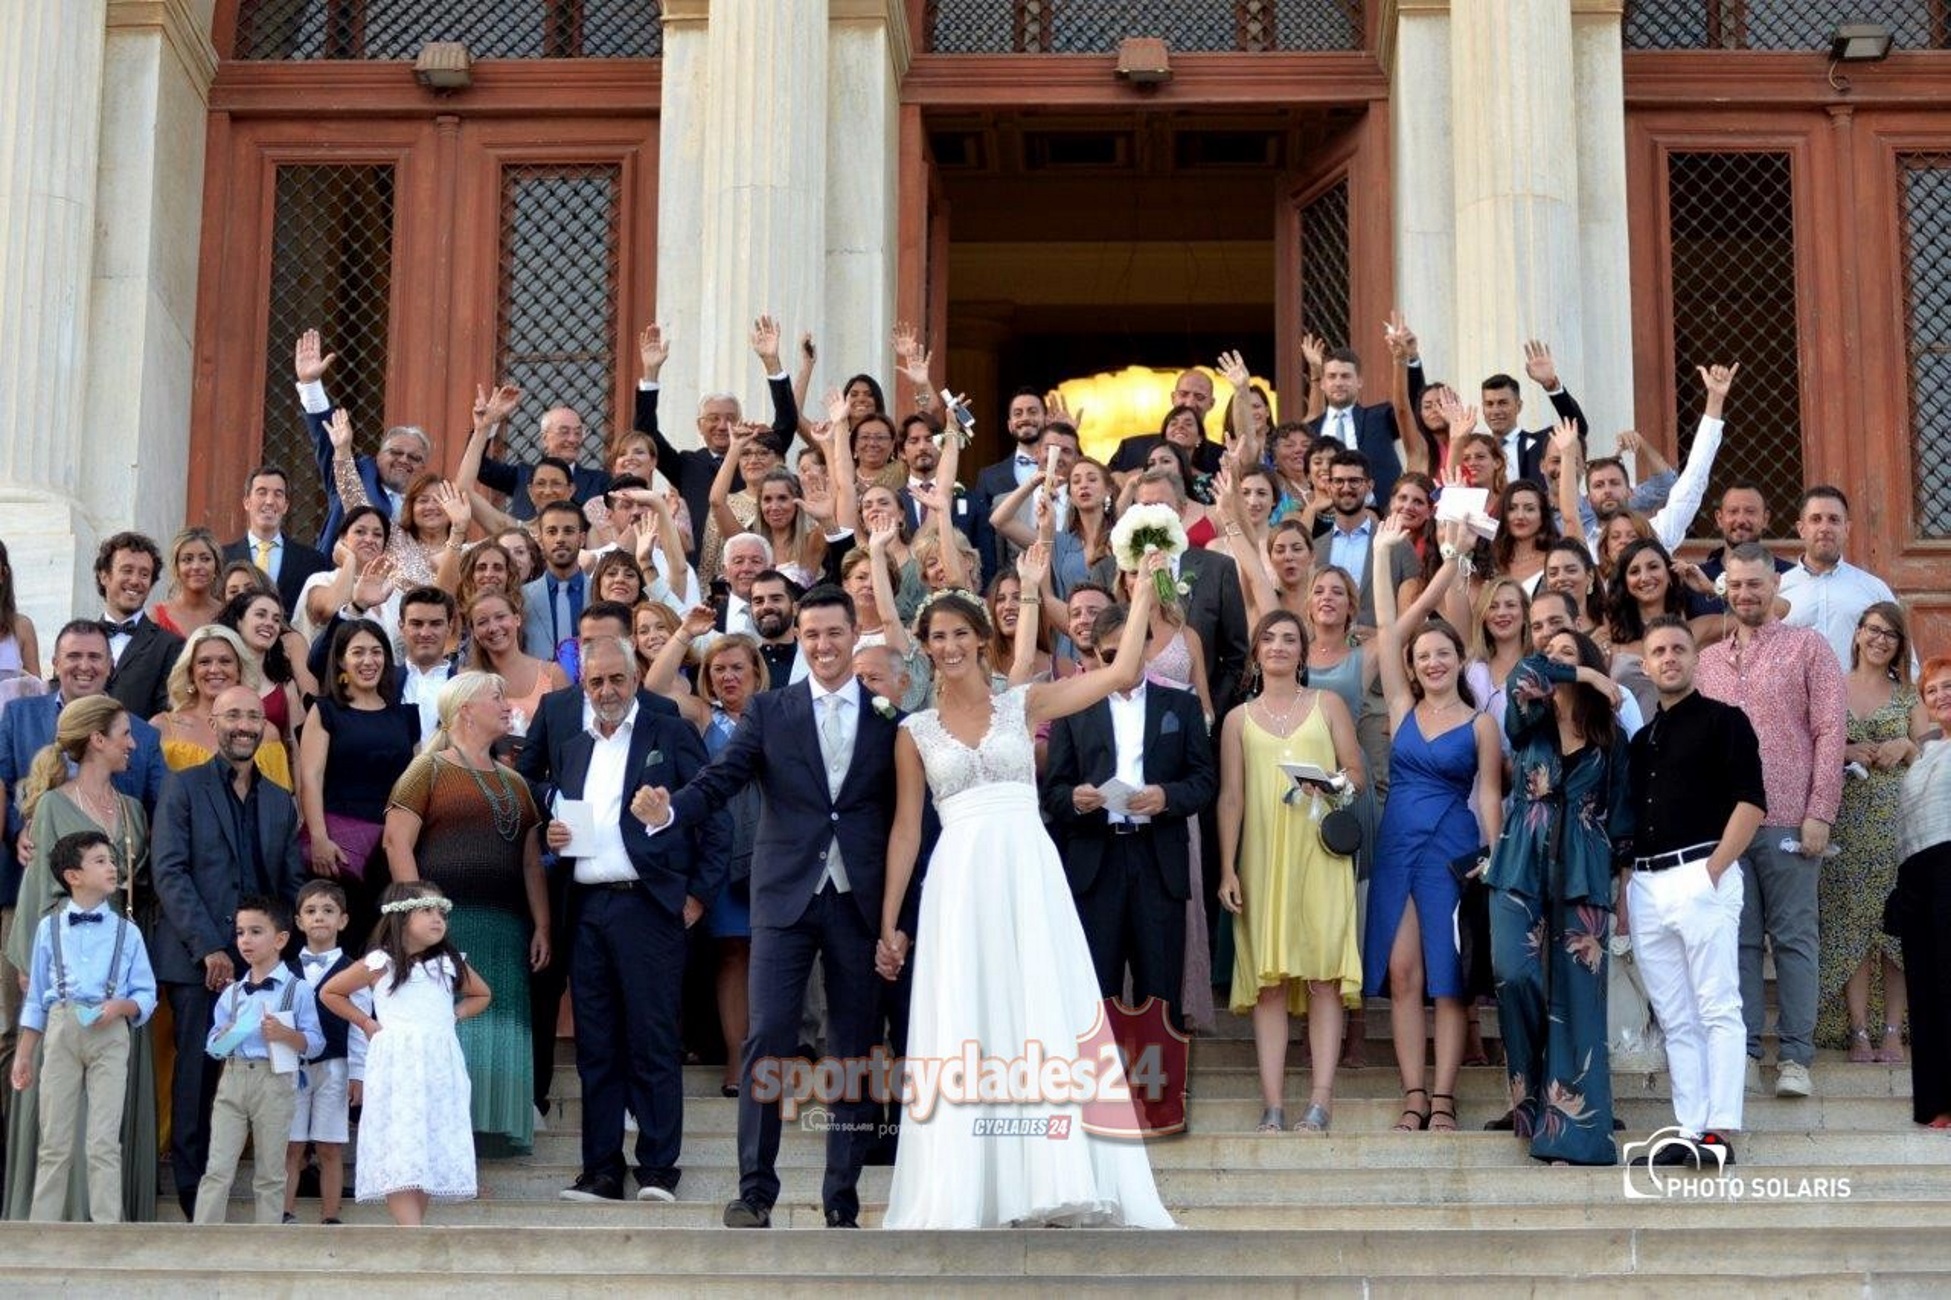 Σύρος: Η νύφη, ο γαμπρός και η μεγάλη έκπληξη – Στις φωτογραφίες δεν ήταν μόνο συγγενείς και φίλοι!